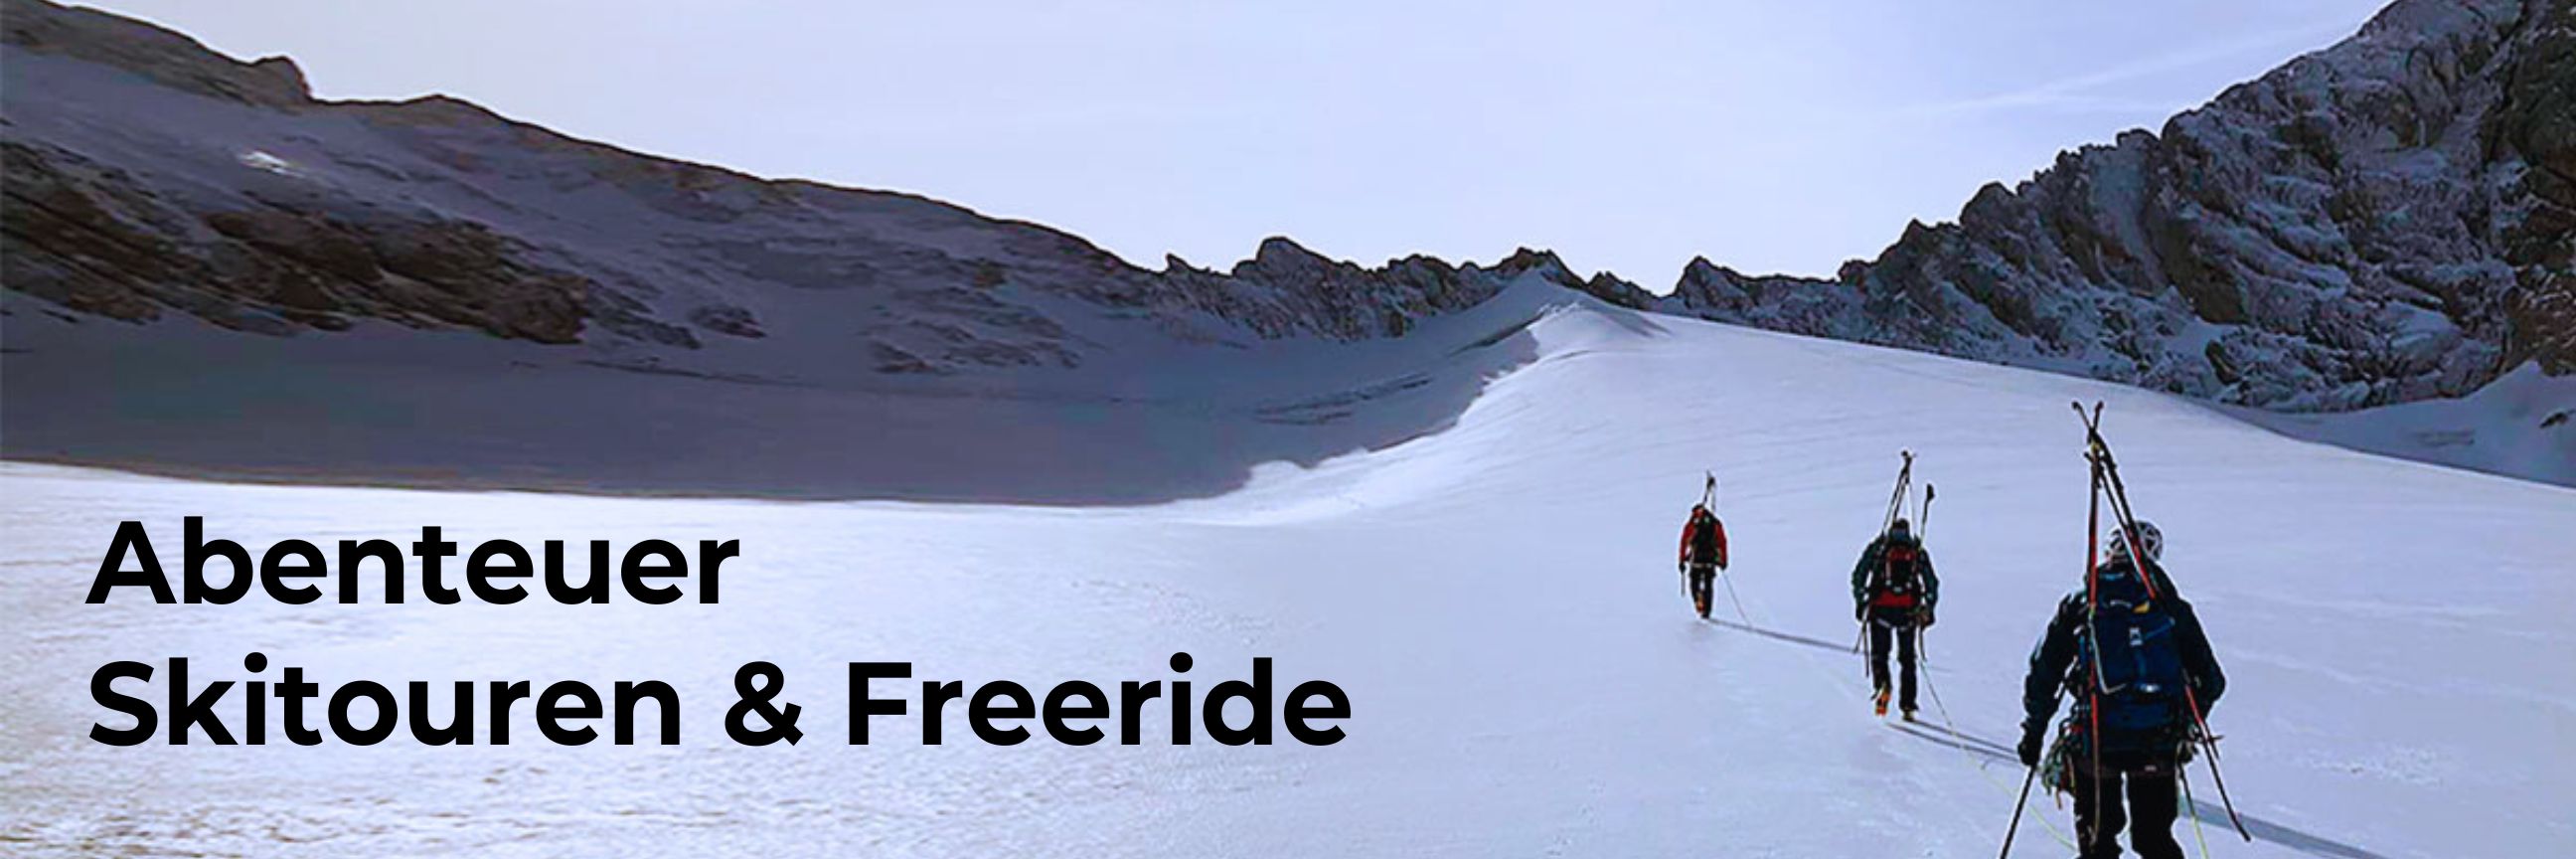 Skitouren, Freeride mit Guide im Pitztal Hochzeiger